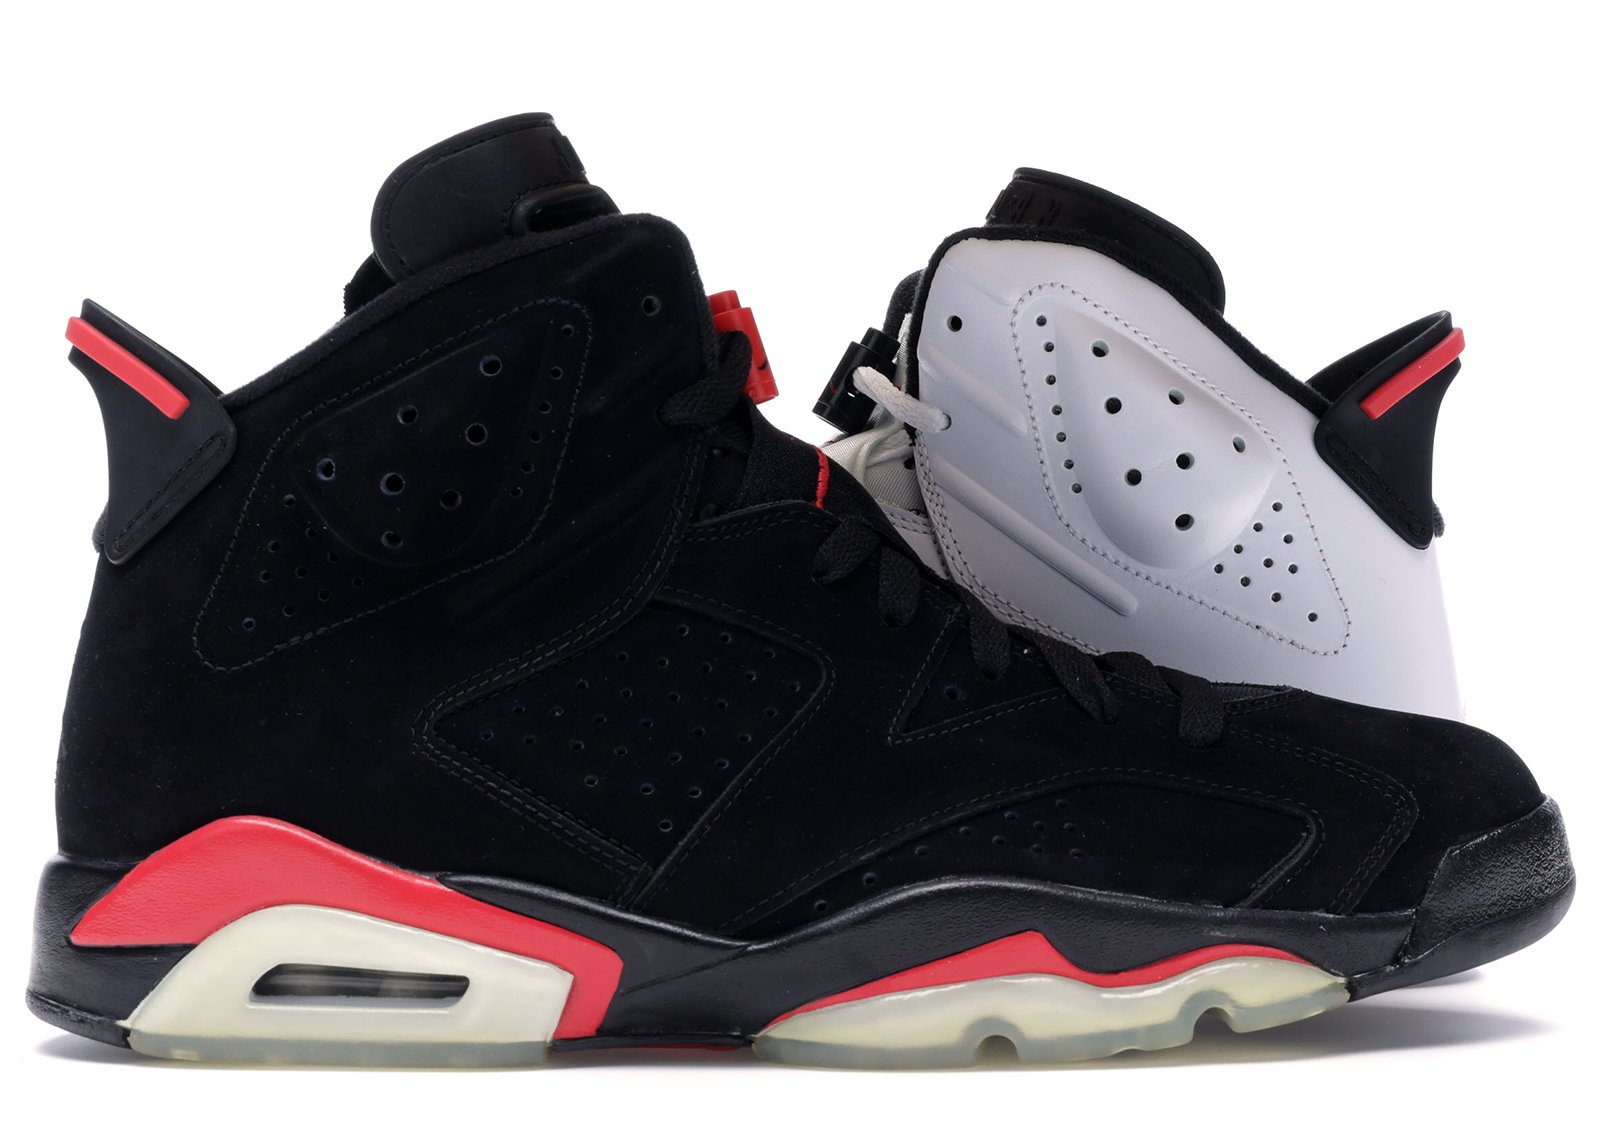 Jordan Infrared Pack 6/6 sneakers